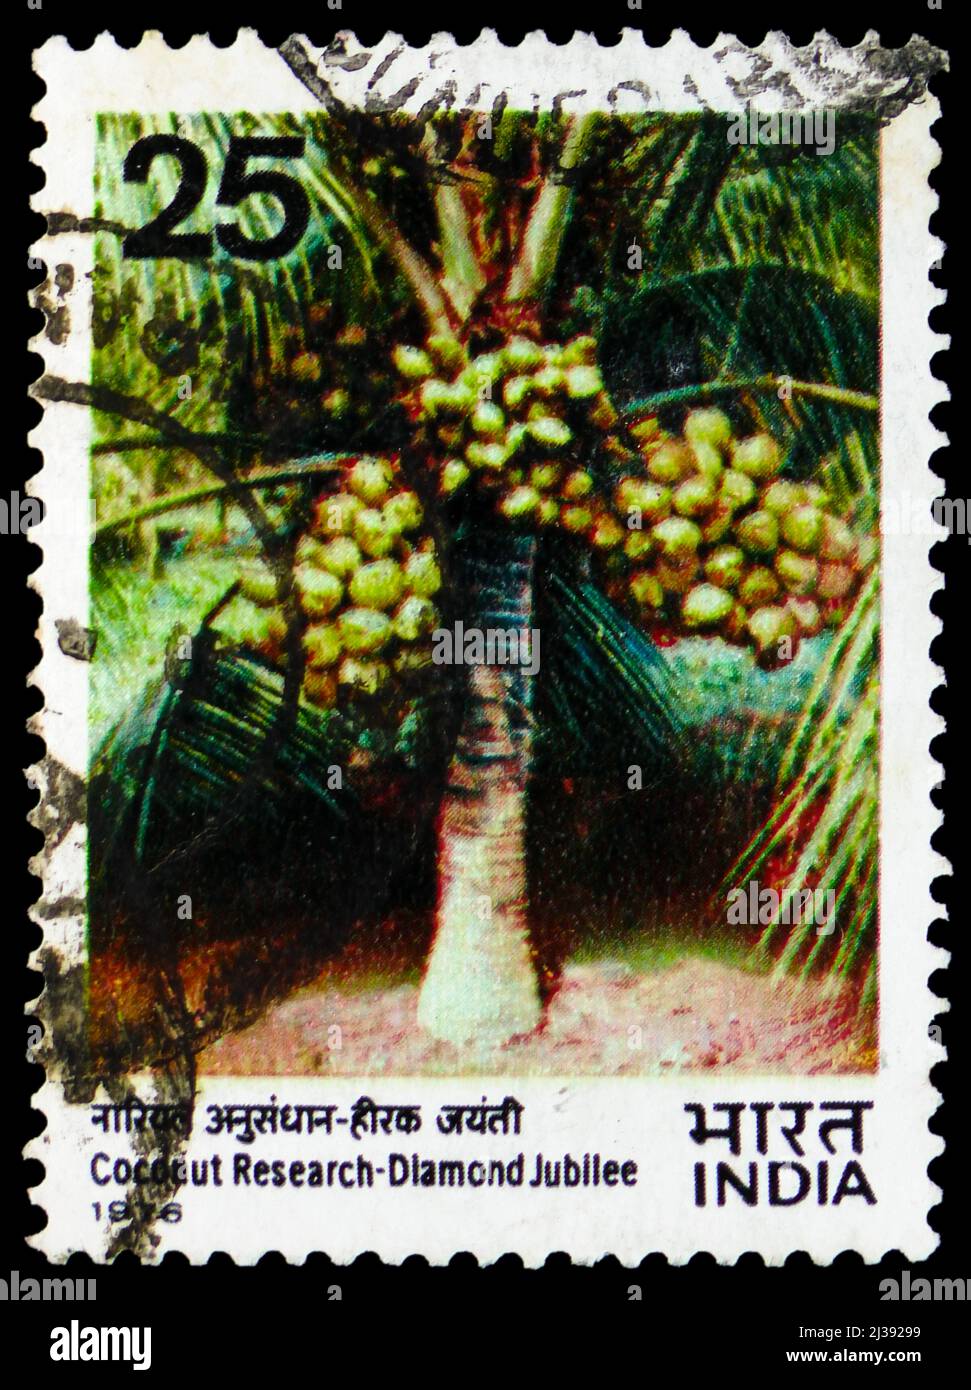 MOSKAU, RUSSLAND - 26. MÄRZ 2022: In Indien gedruckte Briefmarke zeigt Diamond Jubilee of Coconut Research, um 1976 Stockfoto